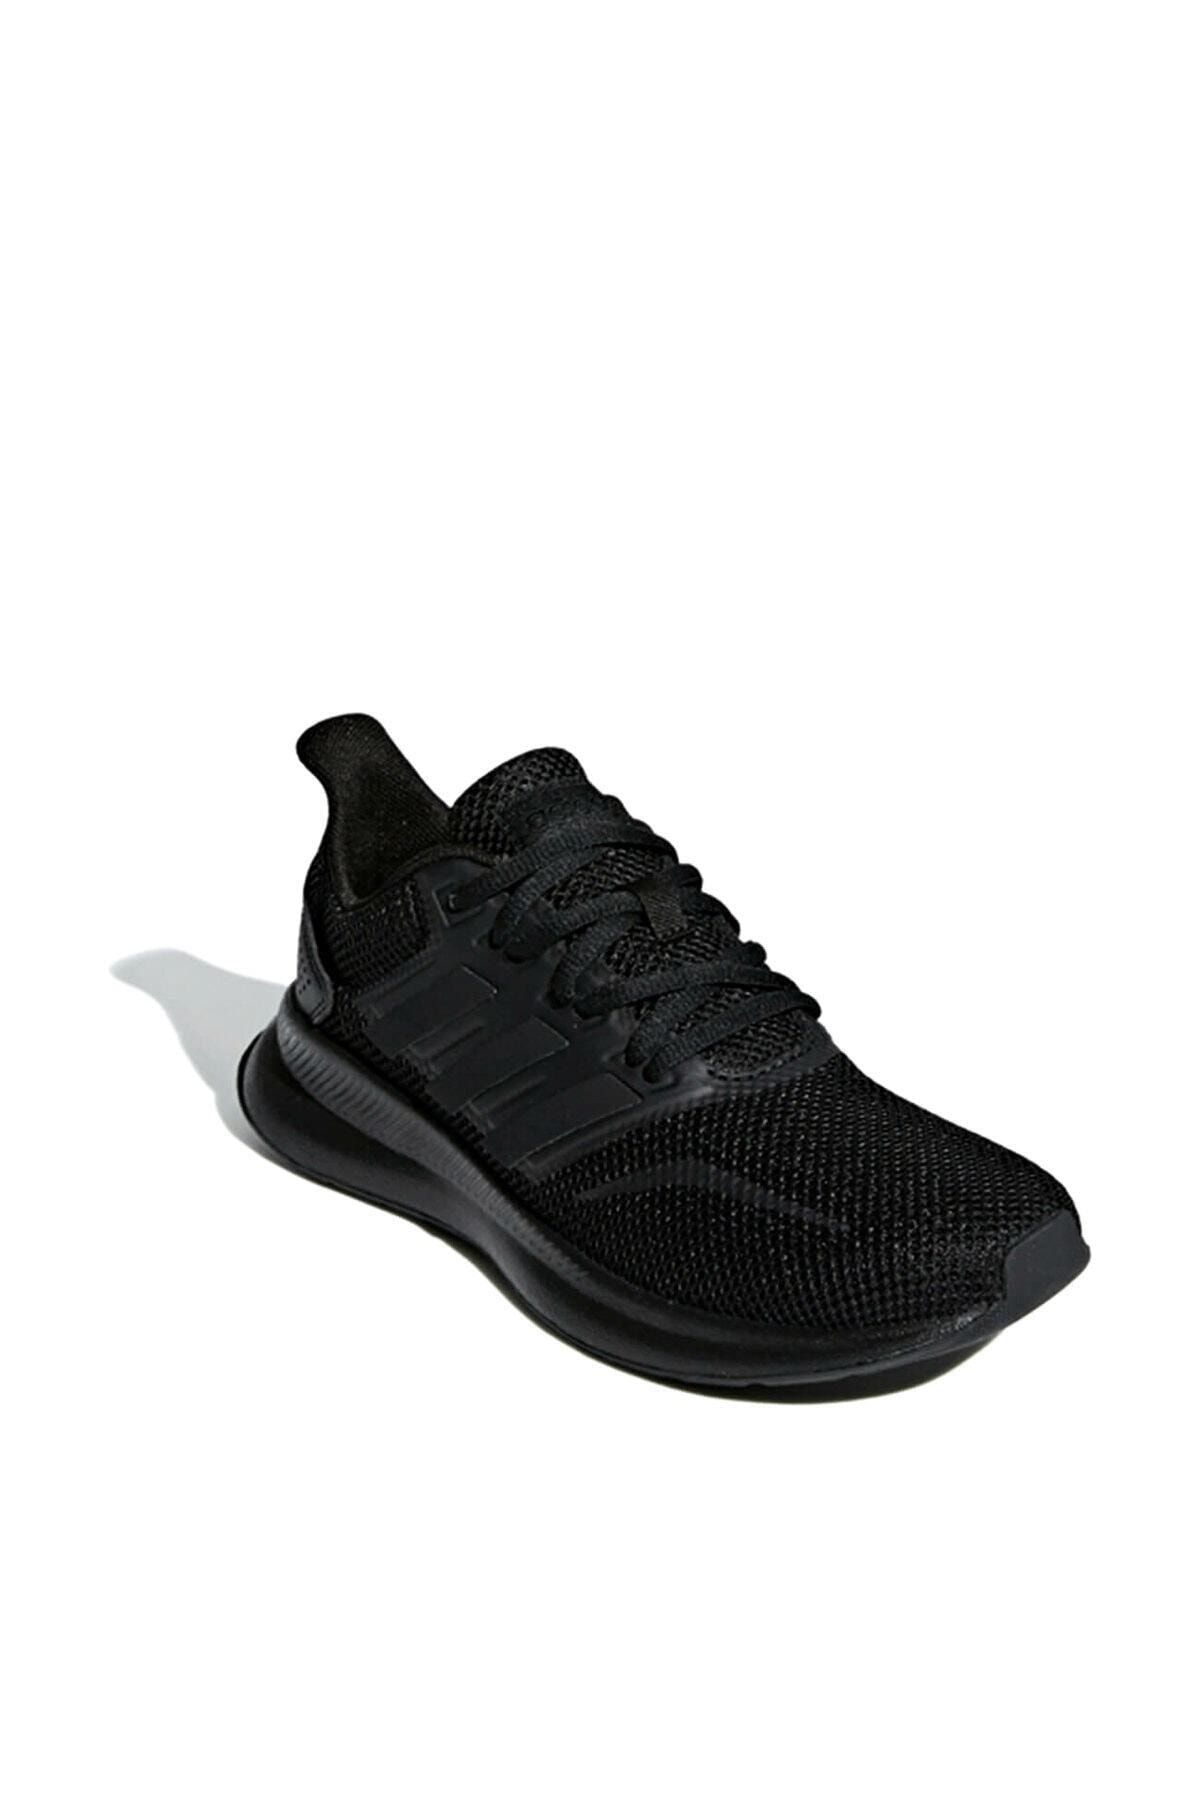 adidas Runfalcon K Siyah Unisex Koşu Ayakkabısı